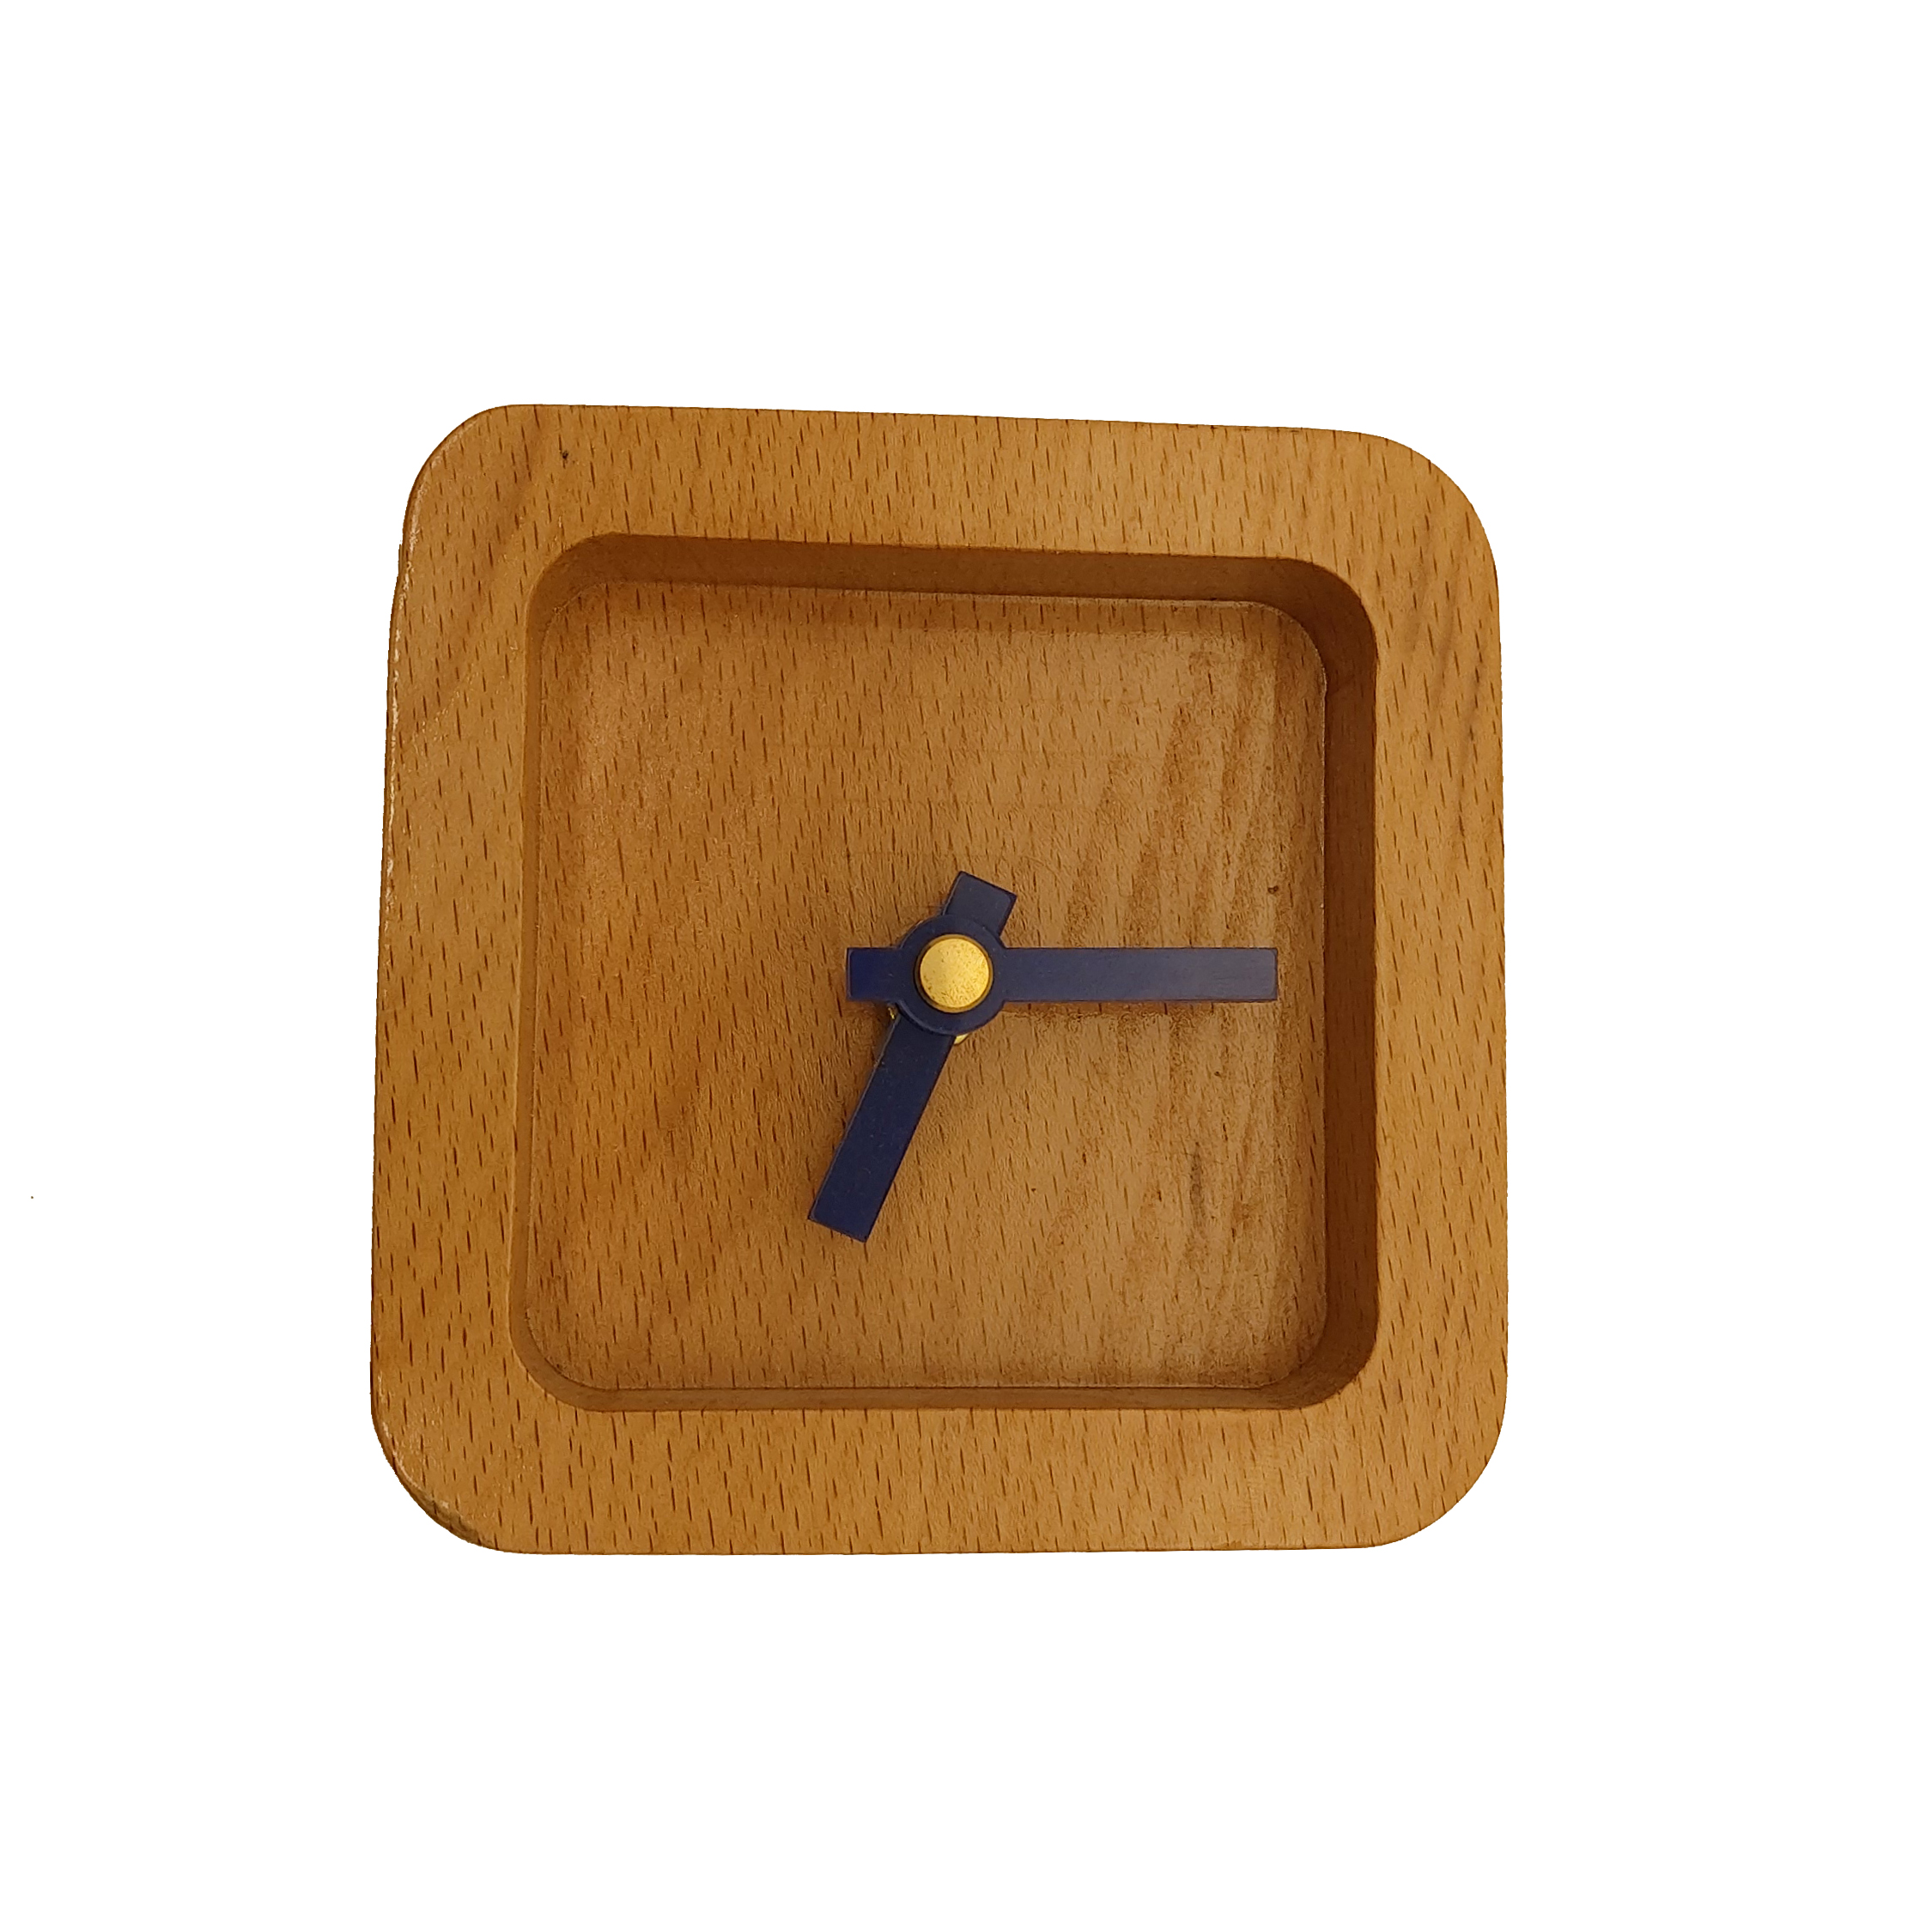 ساعت رومیزی چوبی مدل W01